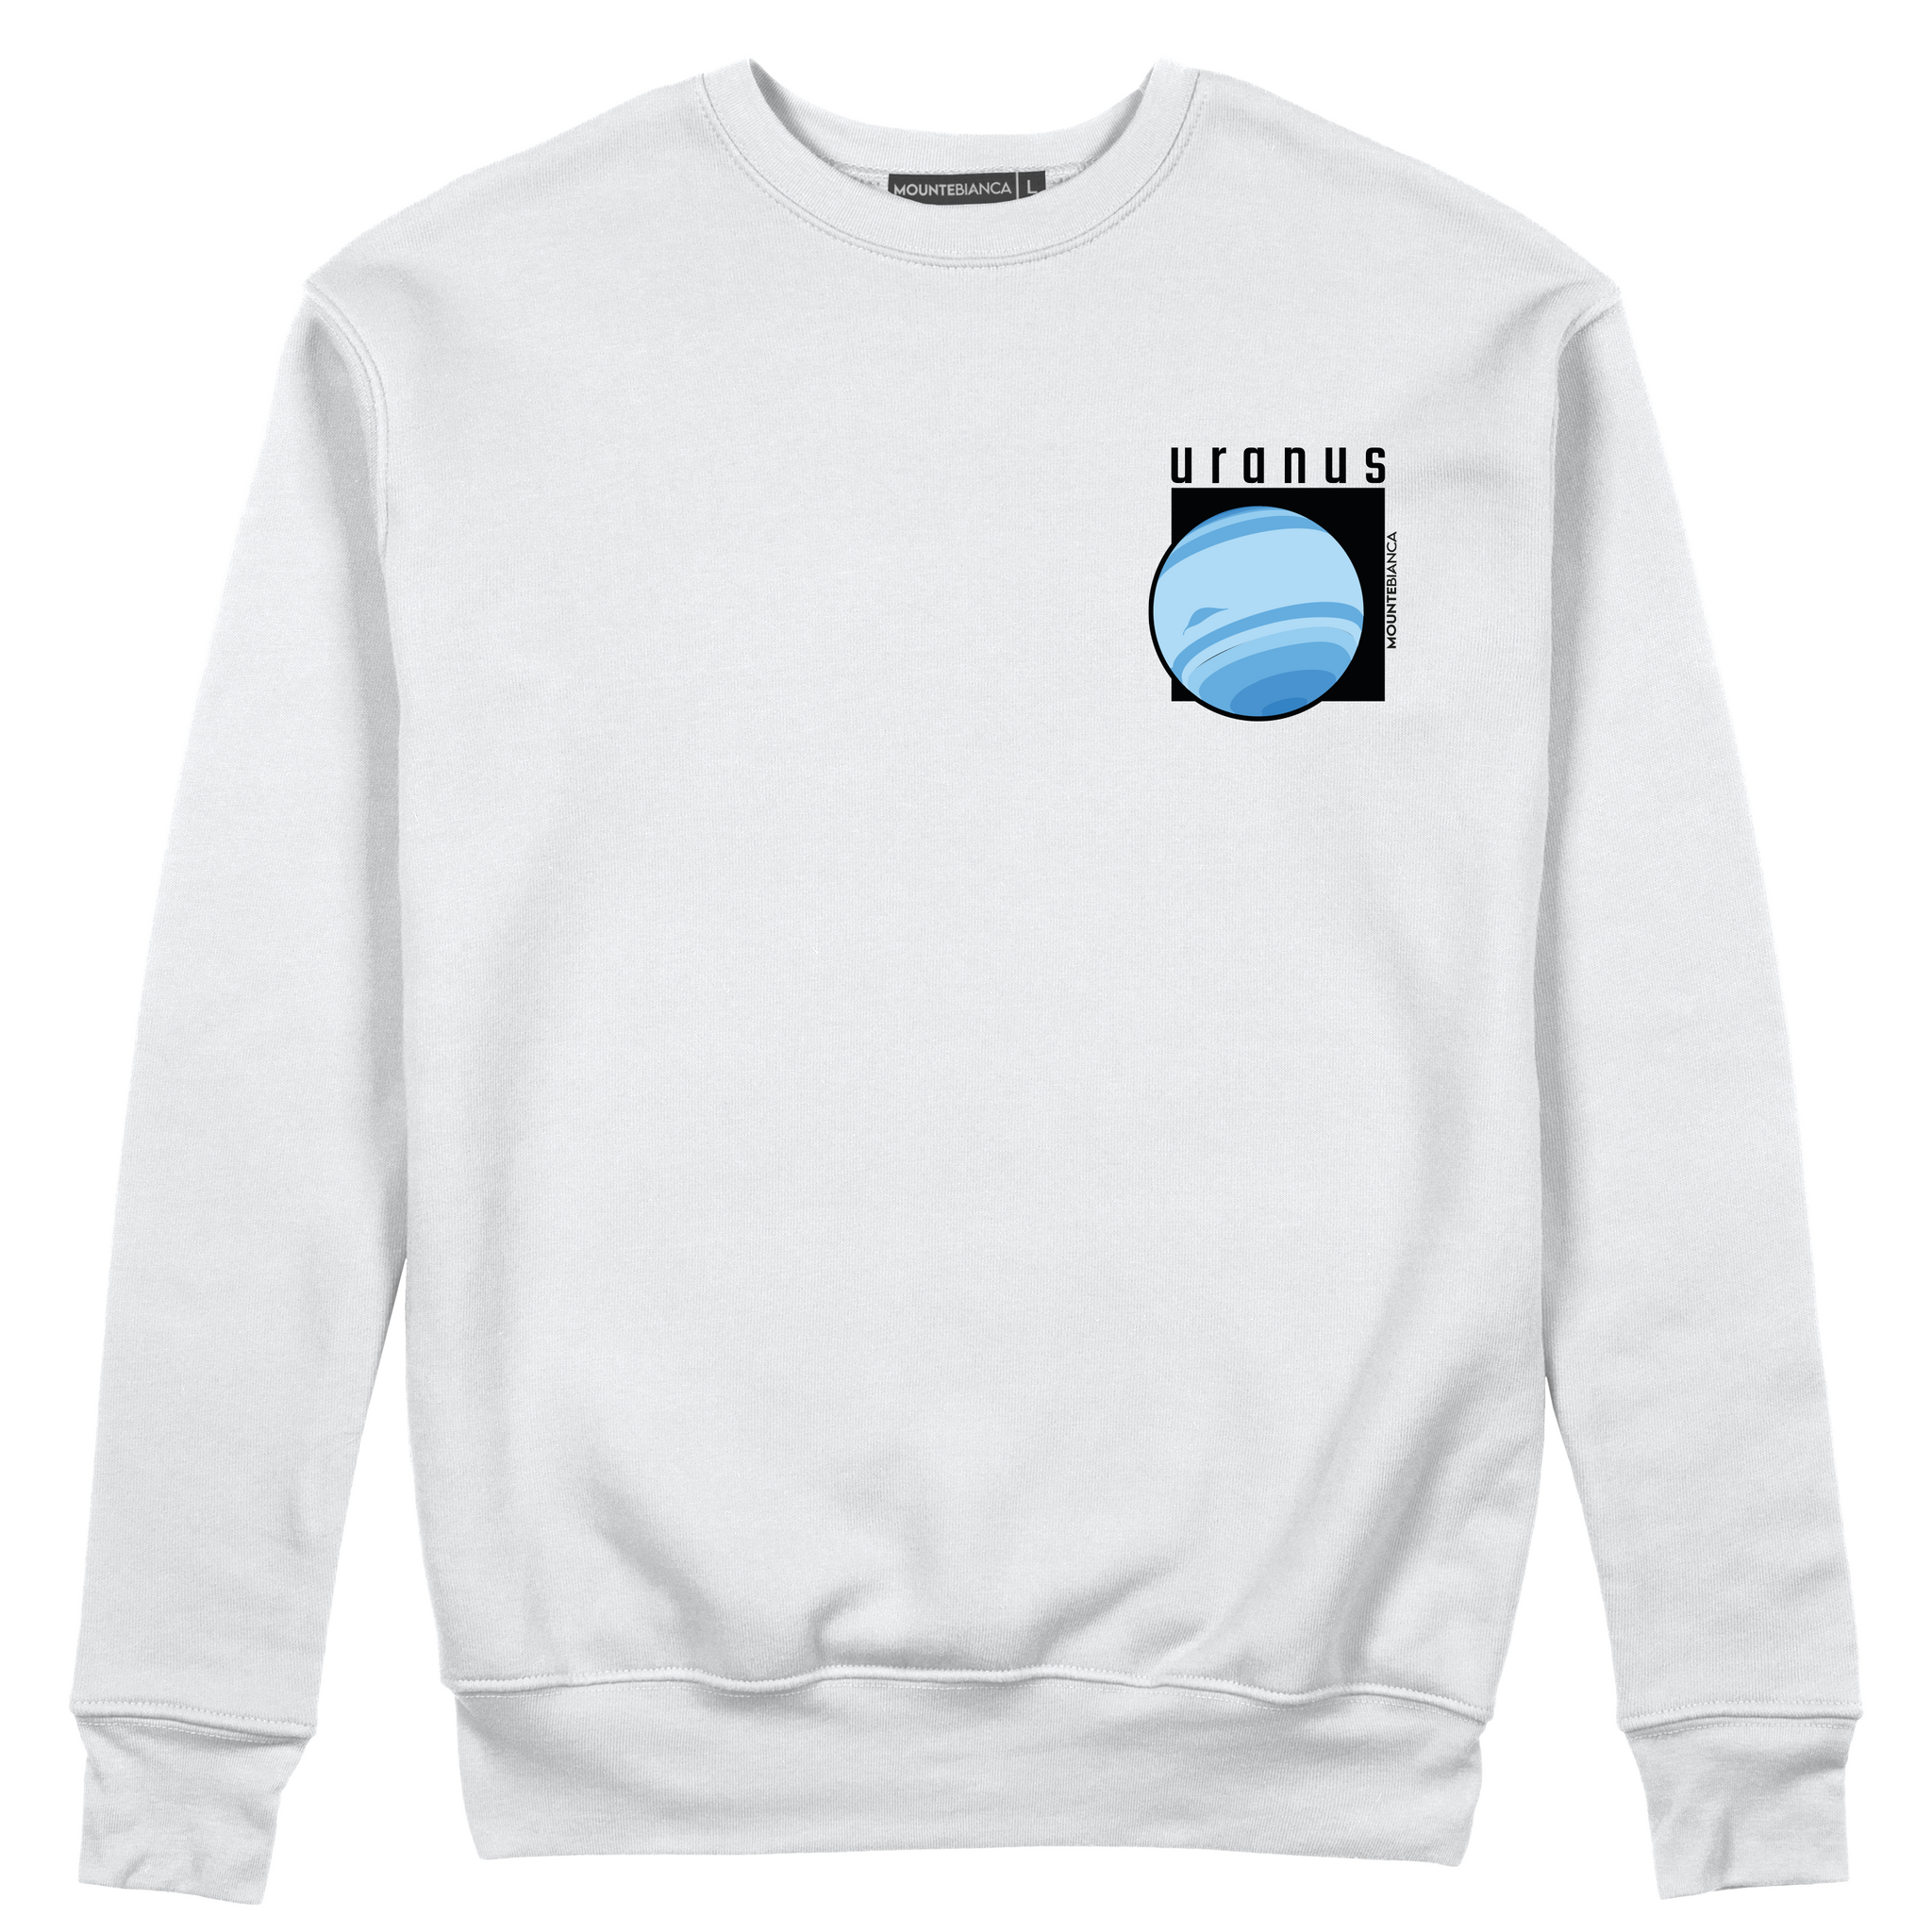 Uranus - Sweatshirt